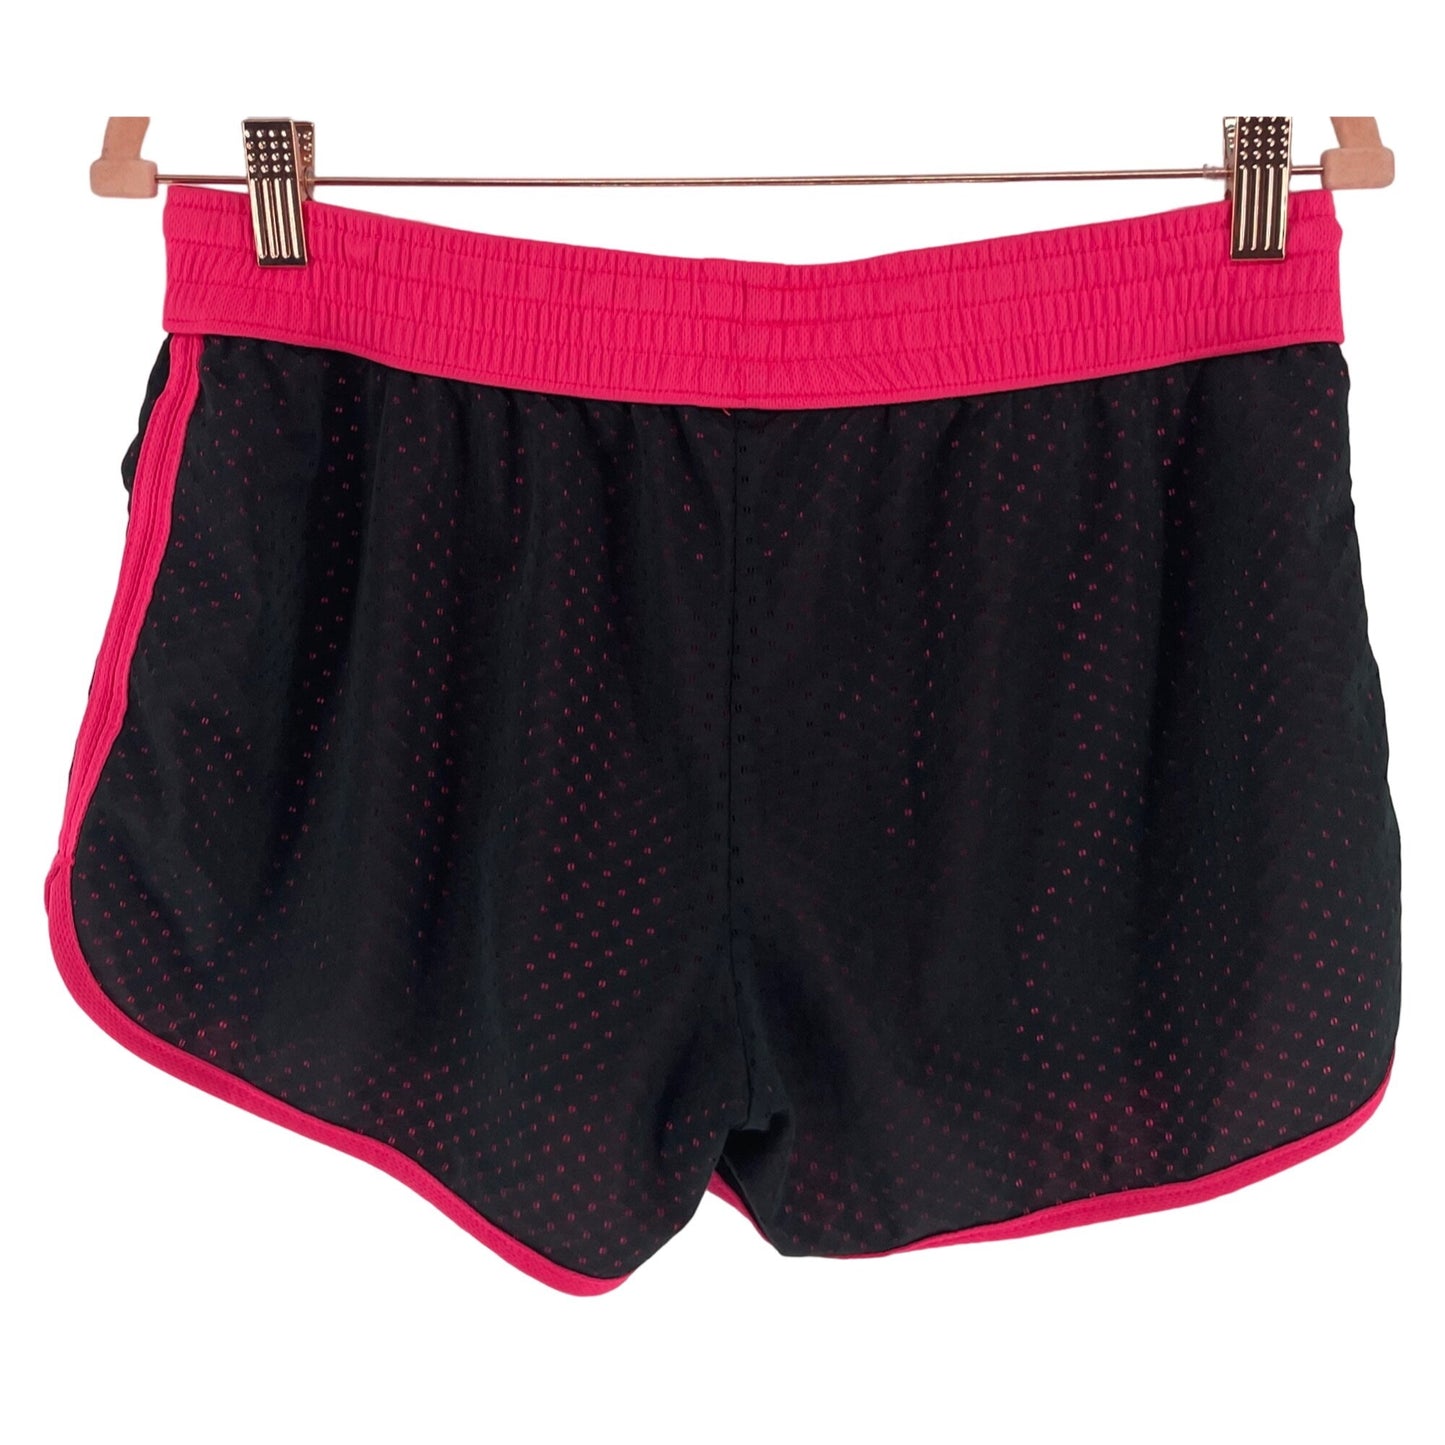 Women's Size Extra Large Black & Pink Drawstring Athletic Shorts